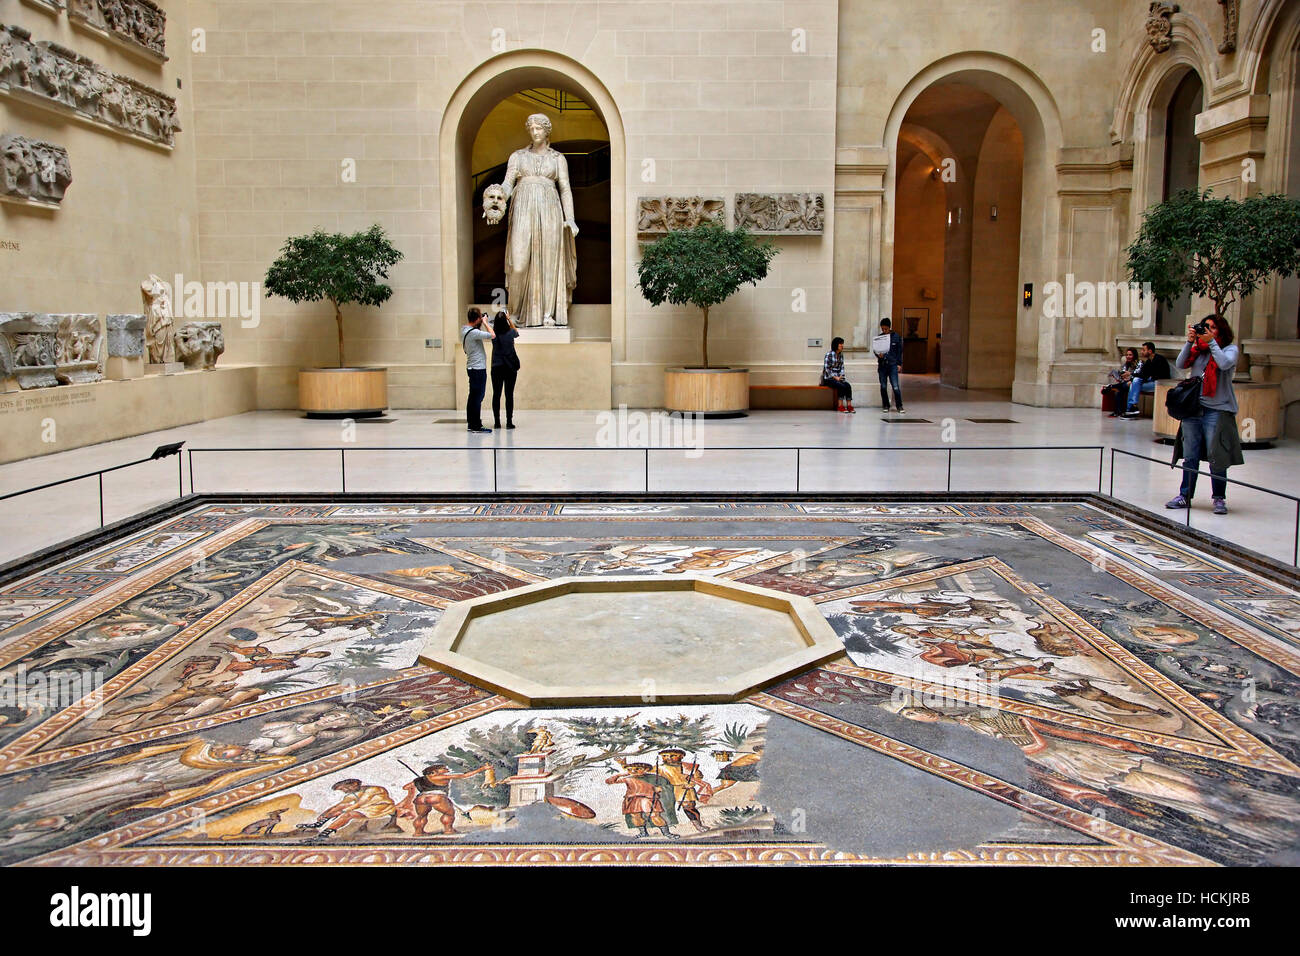 La Sfinge del cortile con il 'Seasons' pavimento a mosaico e una statua di Melpomene :, Denon ala, museo del Louvre di Parigi, Francia. Foto Stock